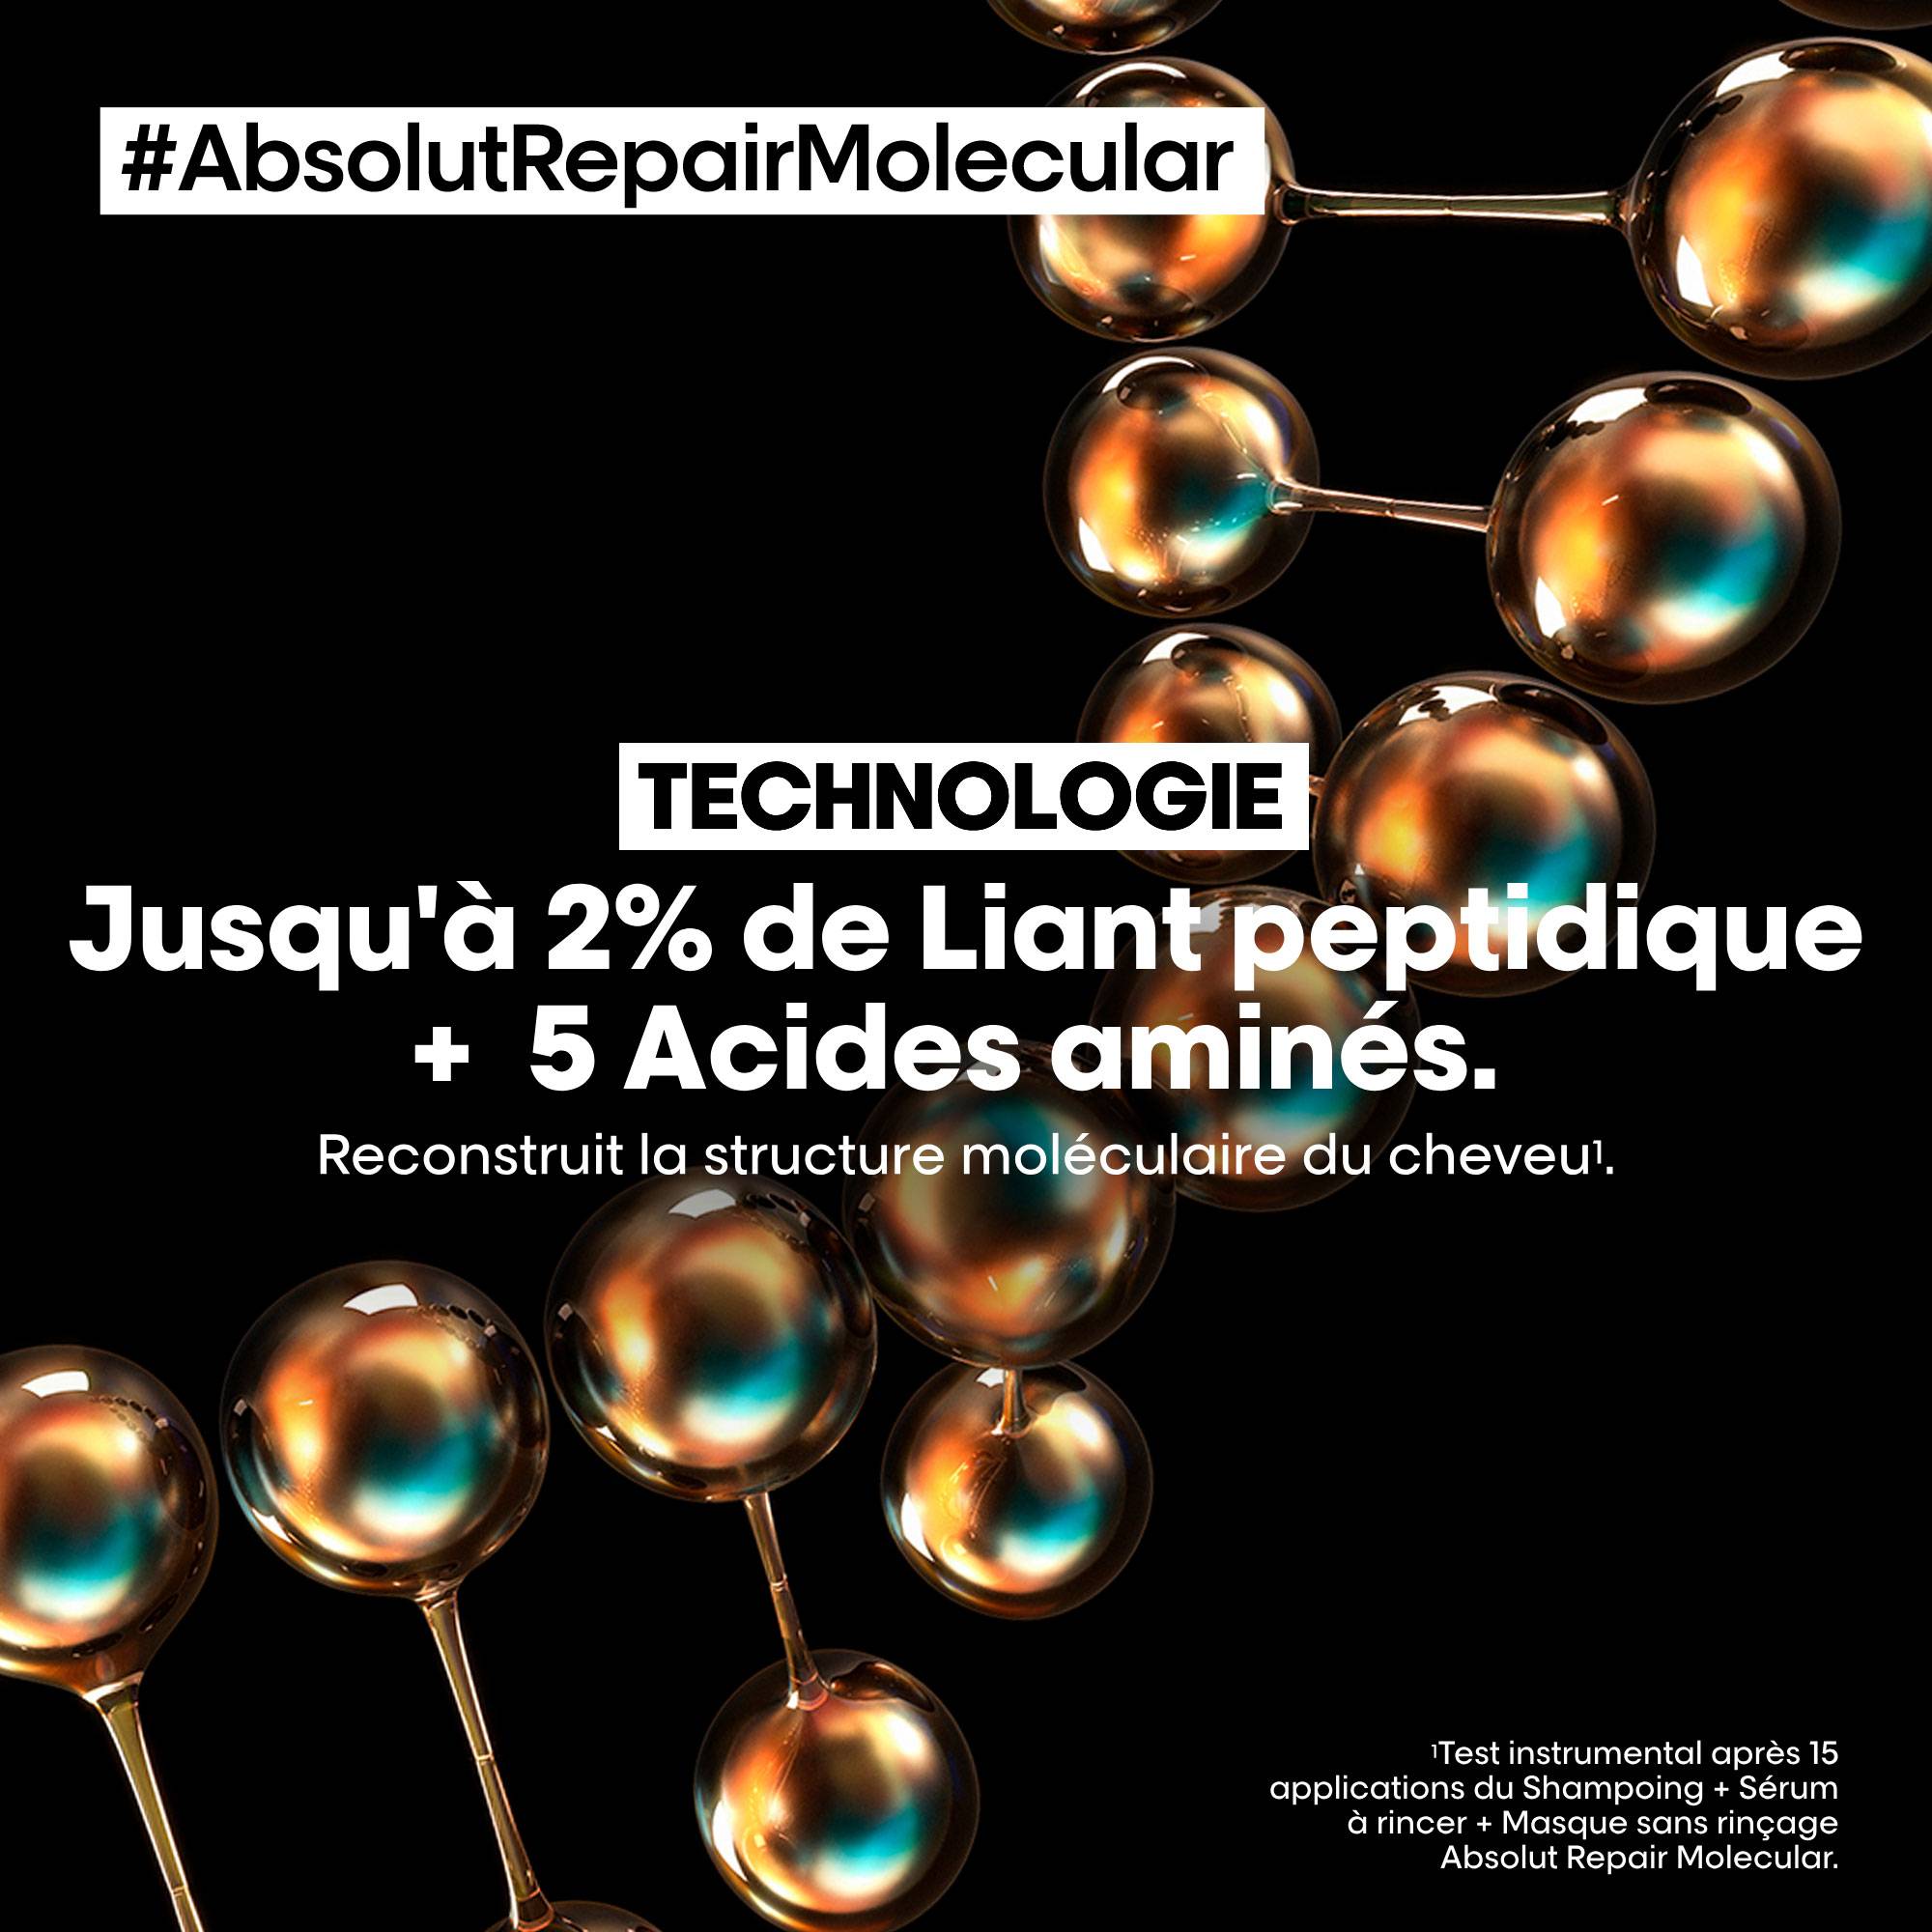 Shampoing réparateur moléculaire Absolut Repair Molecular de la marque L'Oréal Professionnel Contenance 1500ml - 4